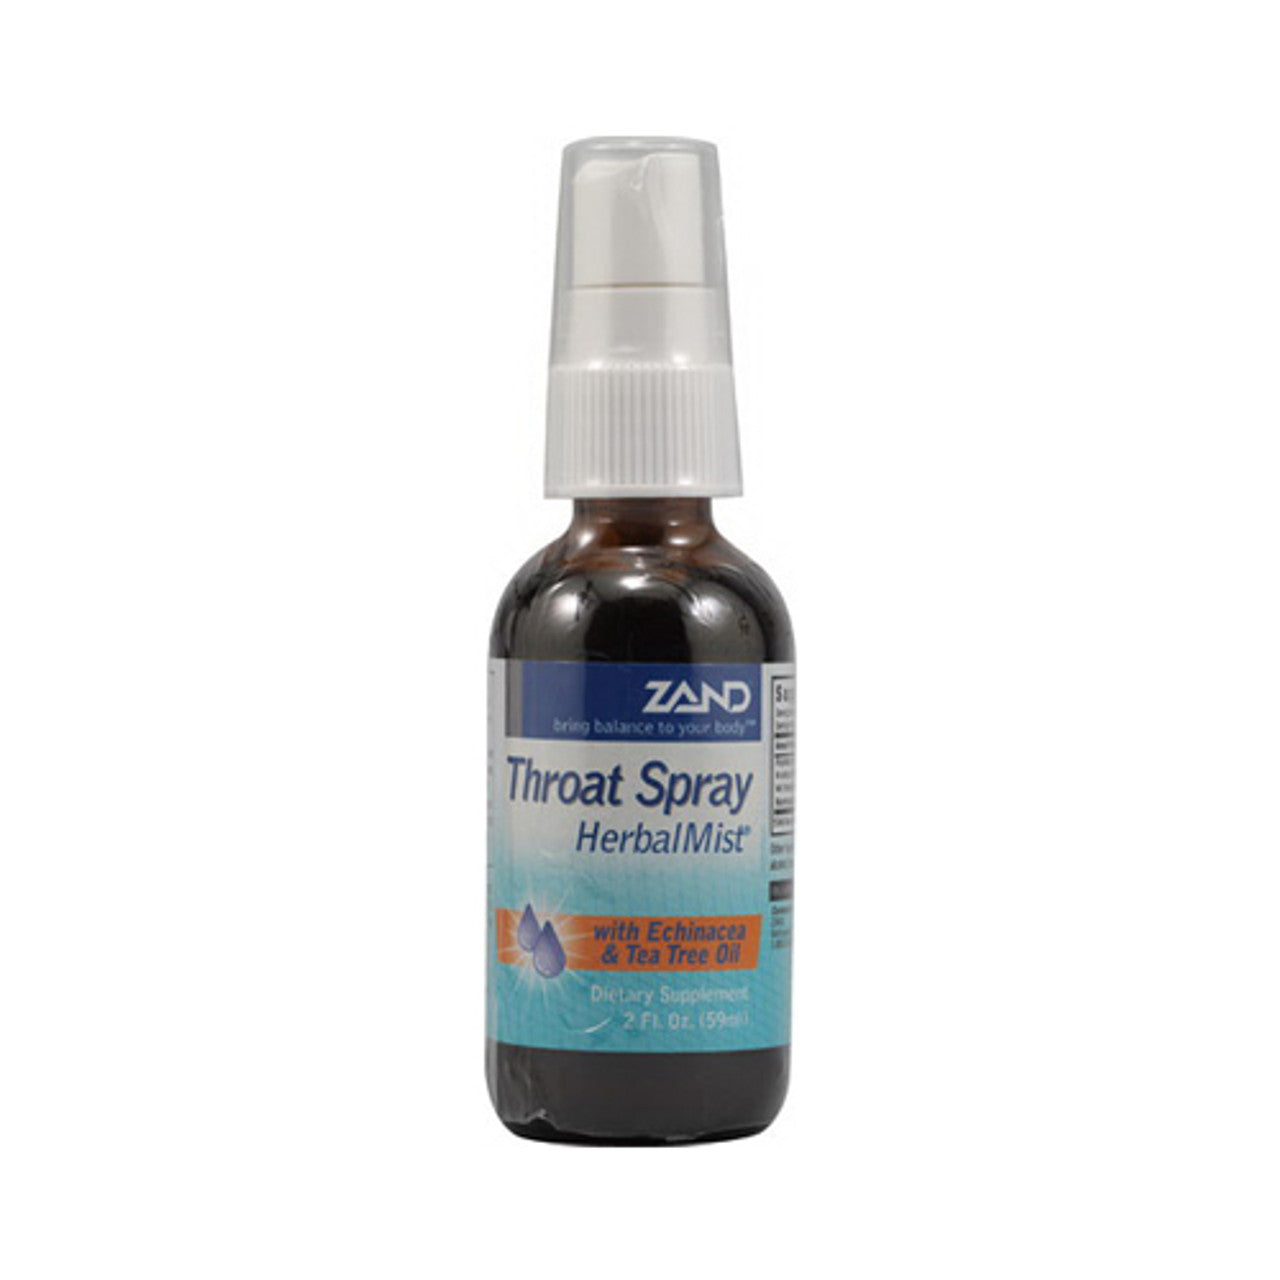 Zand Throat Spray Herbal Mist - 2 Oz